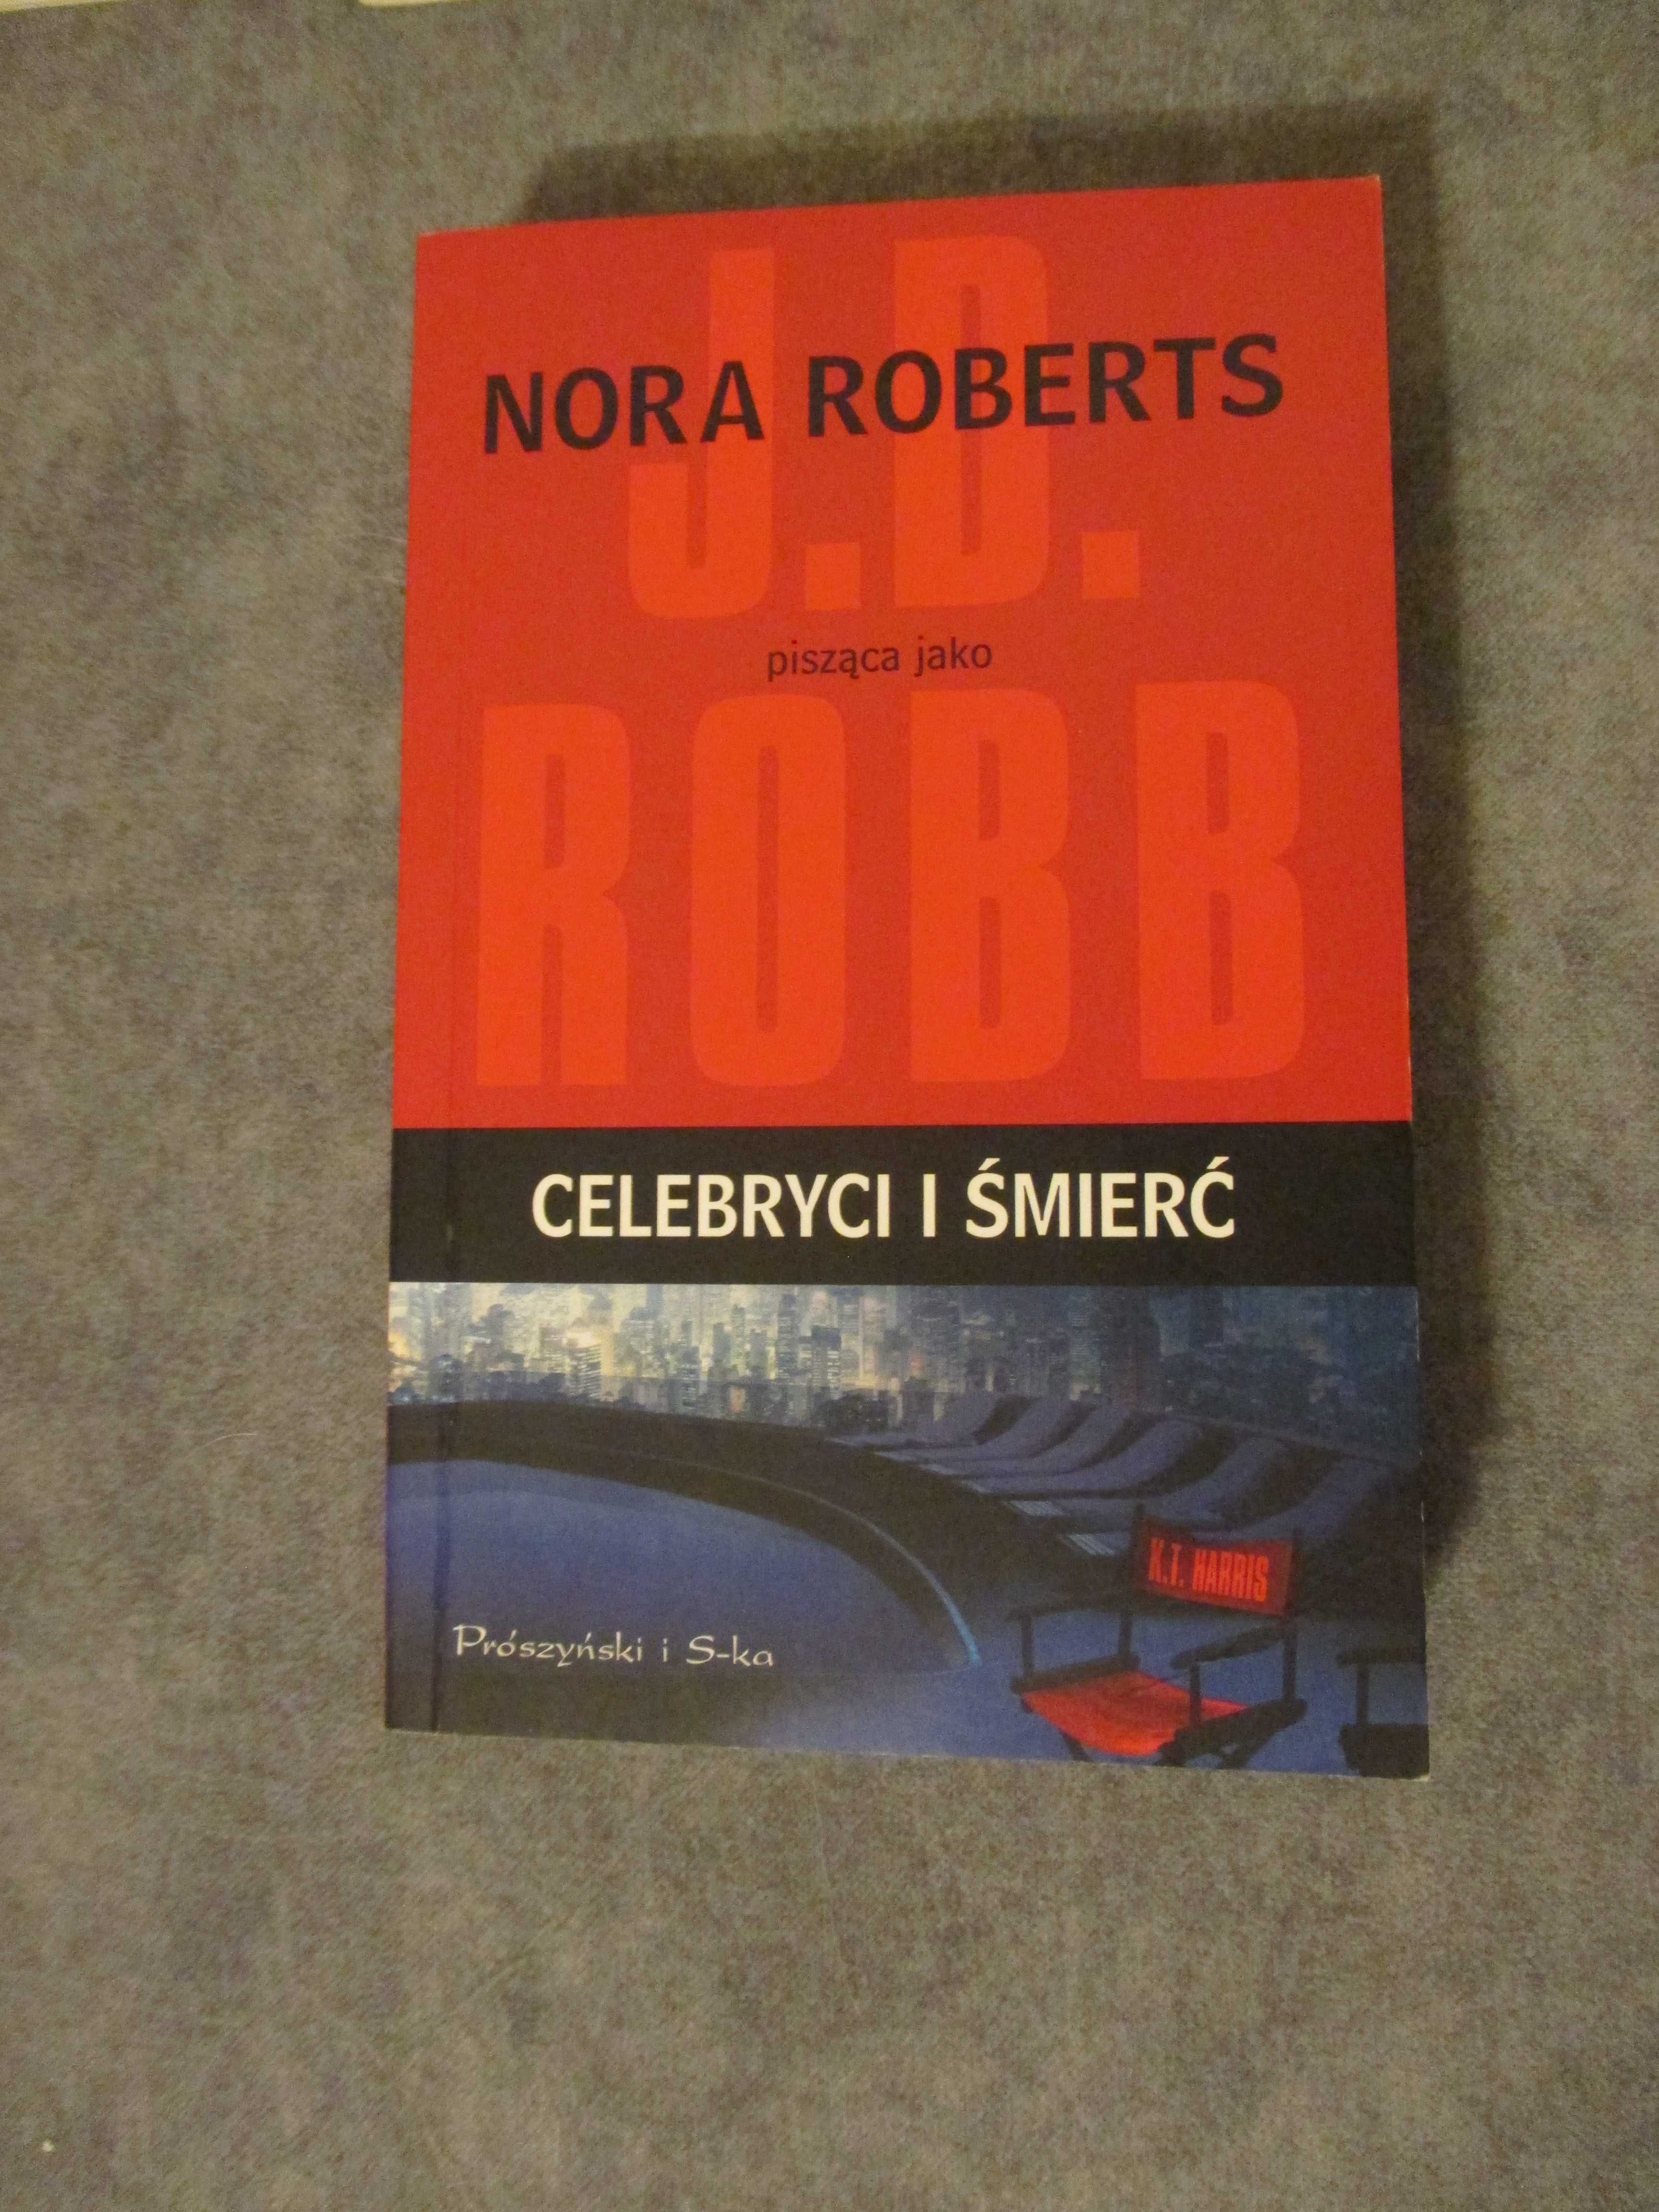 Celebryci i śmierć - Nora Roberts pisząca jako J.D. Robb